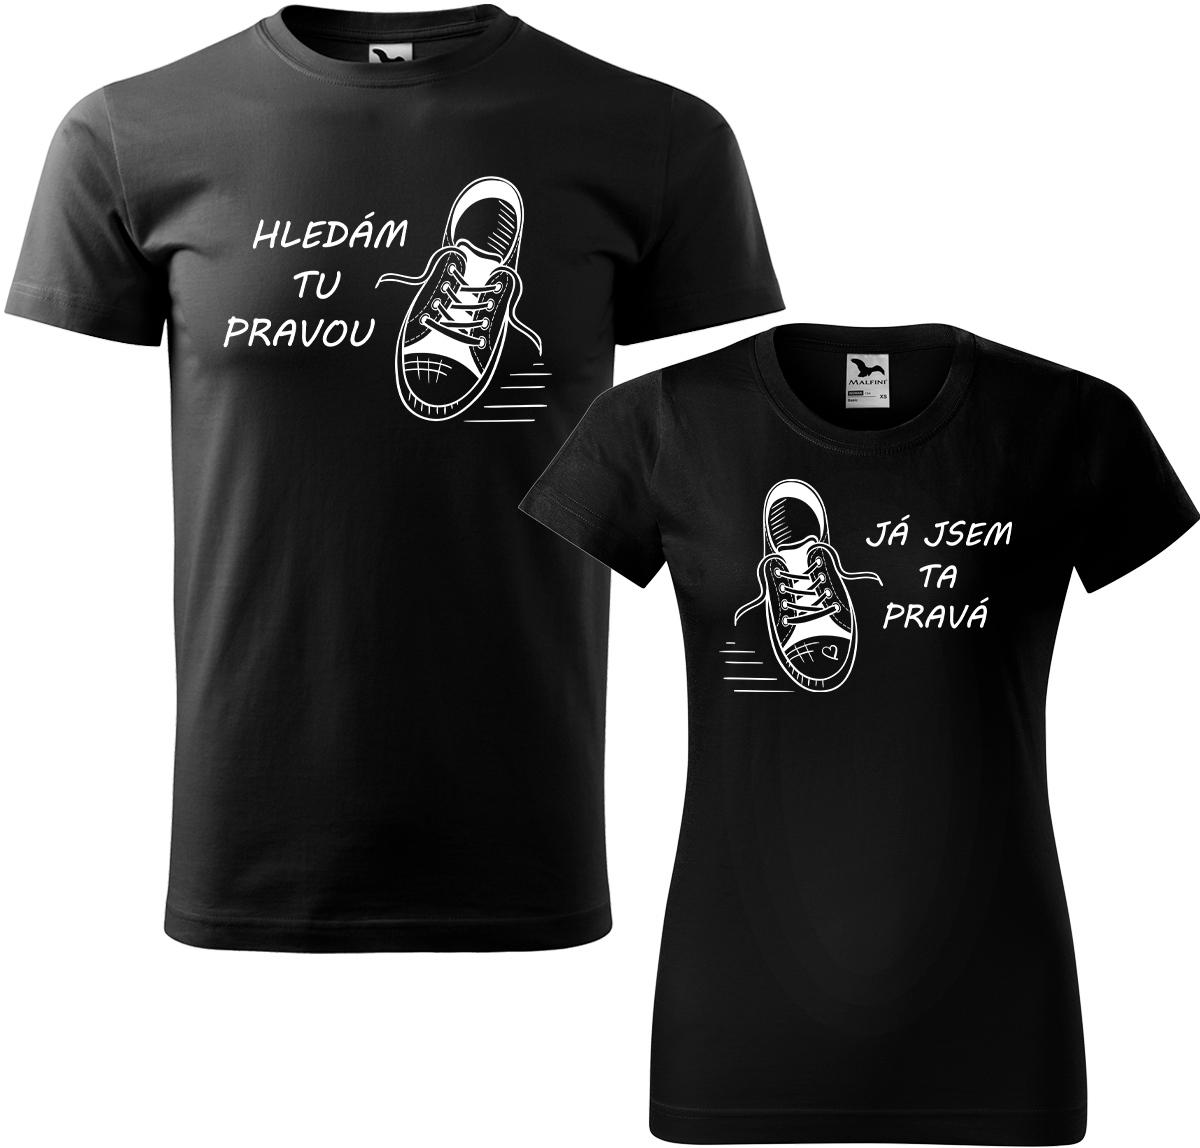 Trička pro páry - Kecky Barva: Černá (01), Velikost dámské tričko: L, Velikost pánské tričko: XL